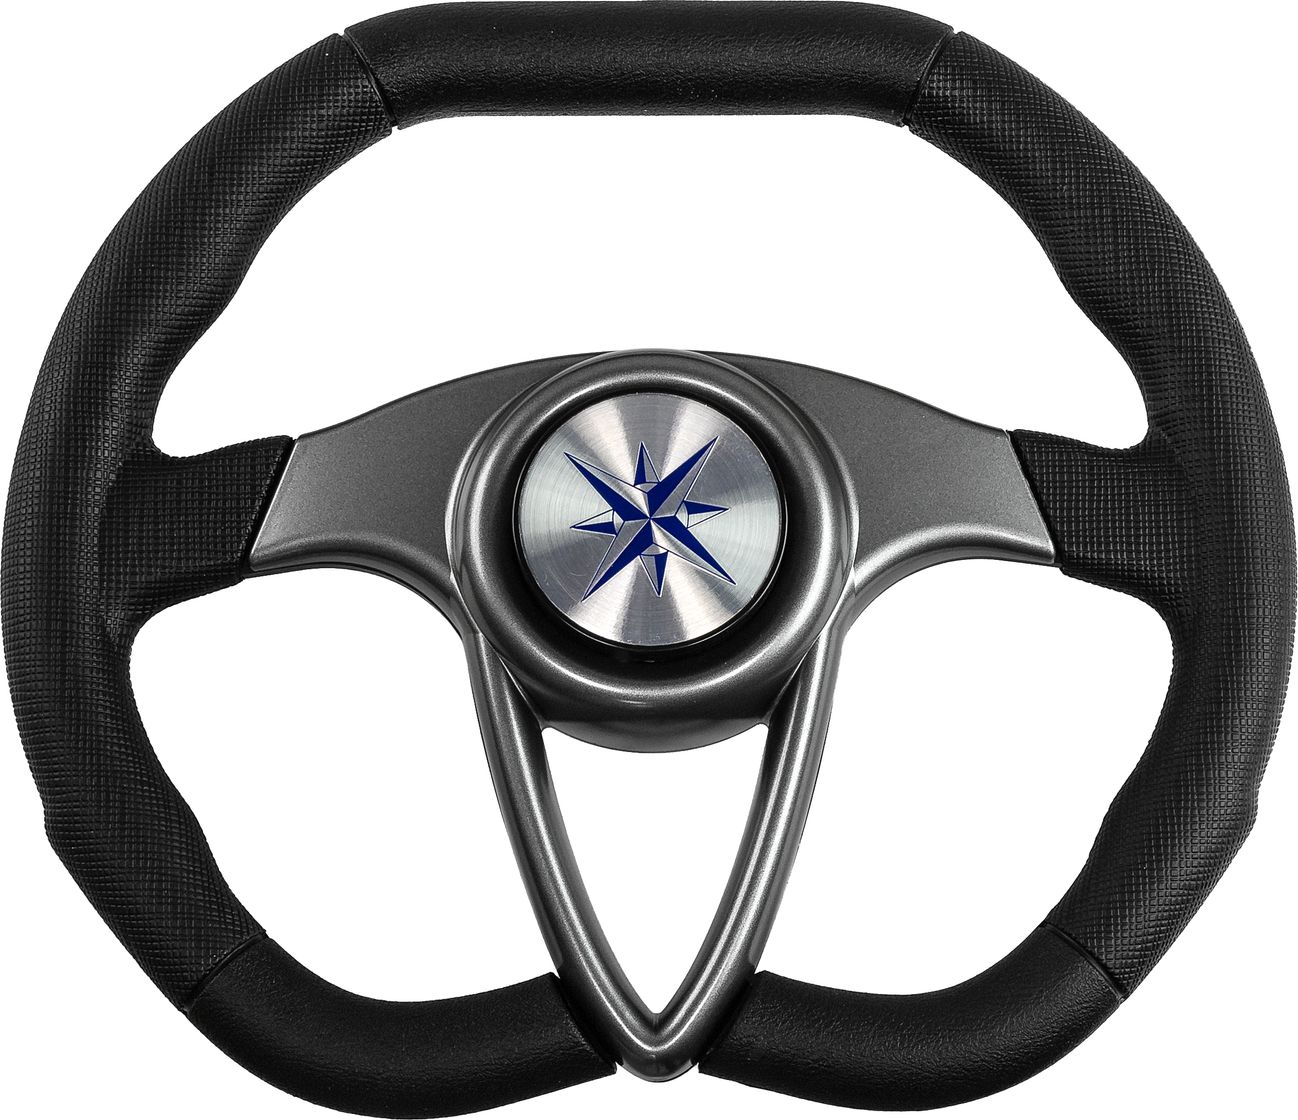 Рулевое колесо BARRACUDA обод черный, спицы серебряные д. 350 мм VN135002-01 рулевое колесо delfino обод серый спицы серебряные д 310 мм vn70103 03